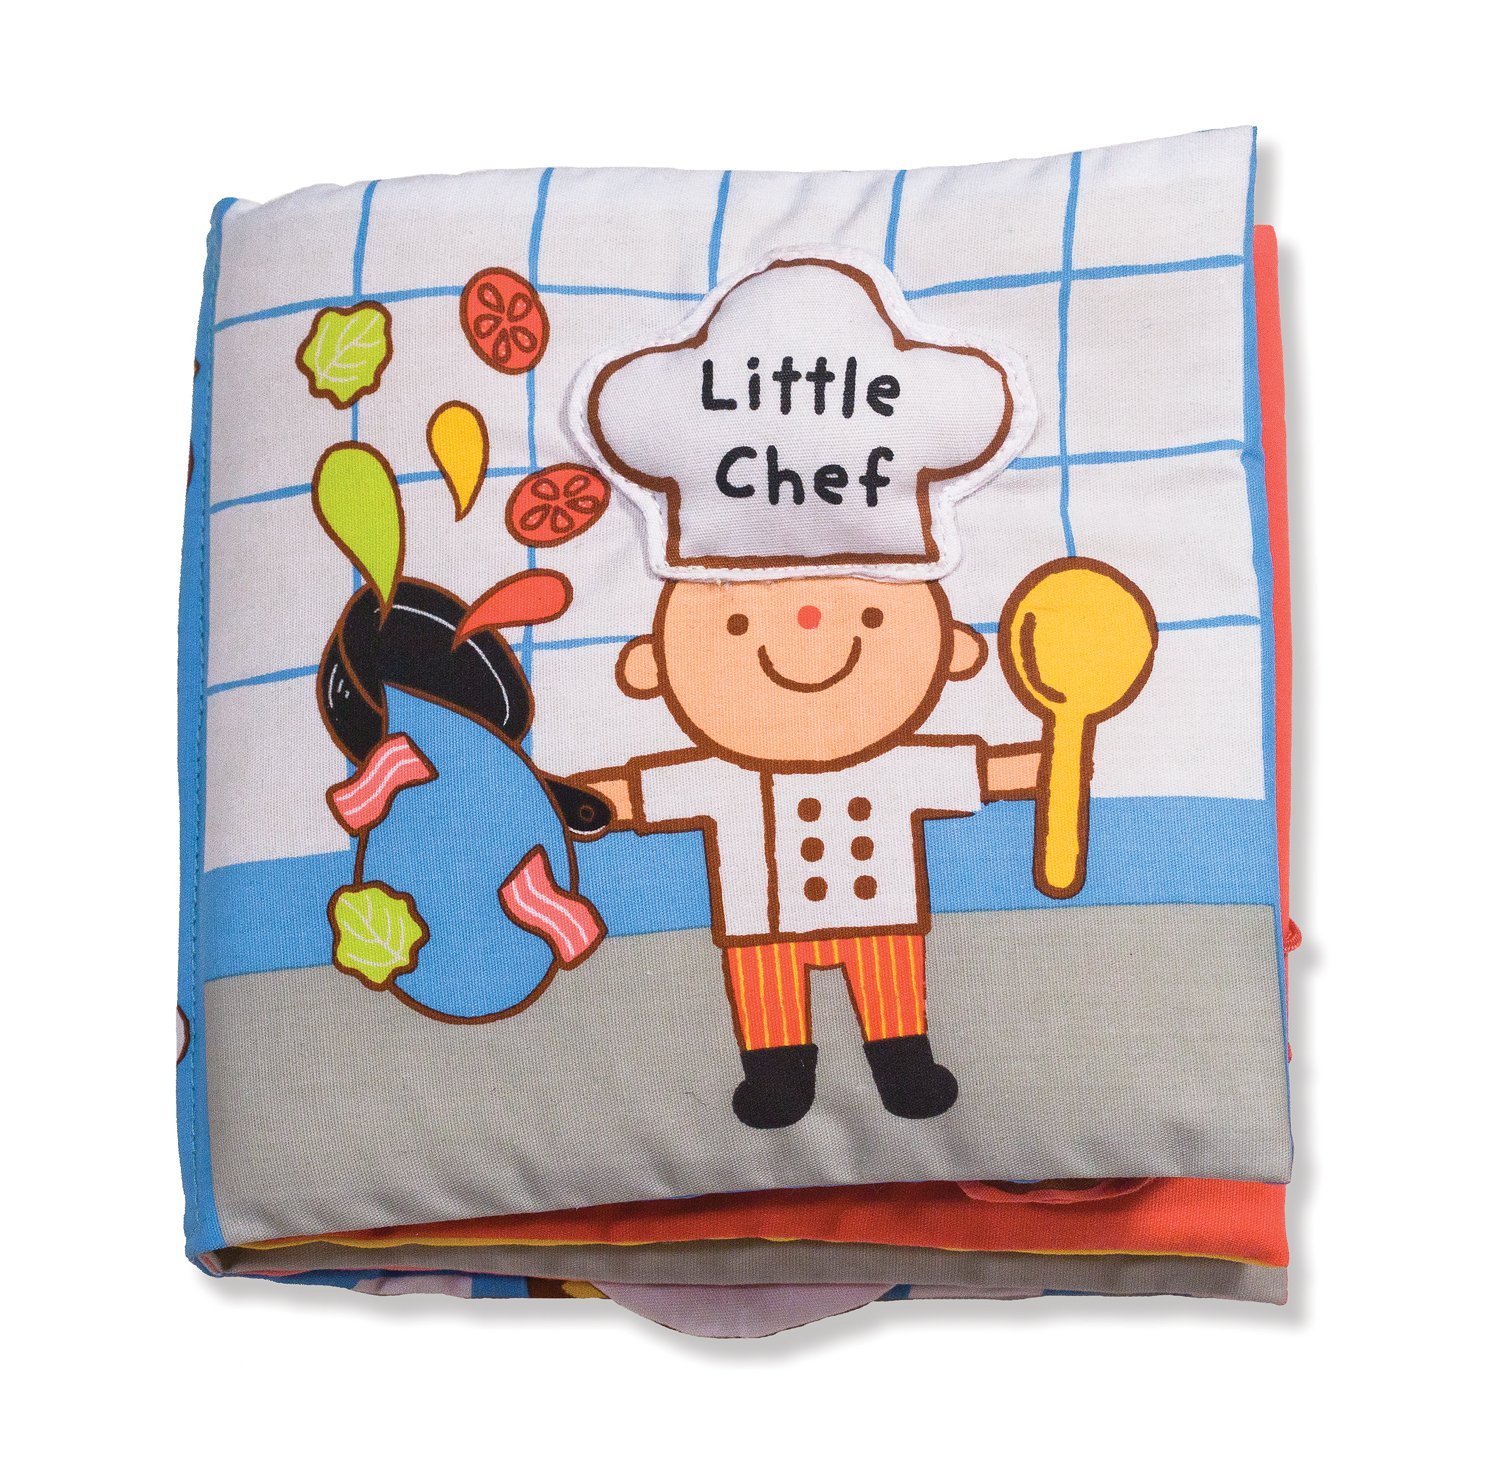 Sách vải giới thiệu hoạt động nấu ăn cho trẻ nhỏ Little Chef